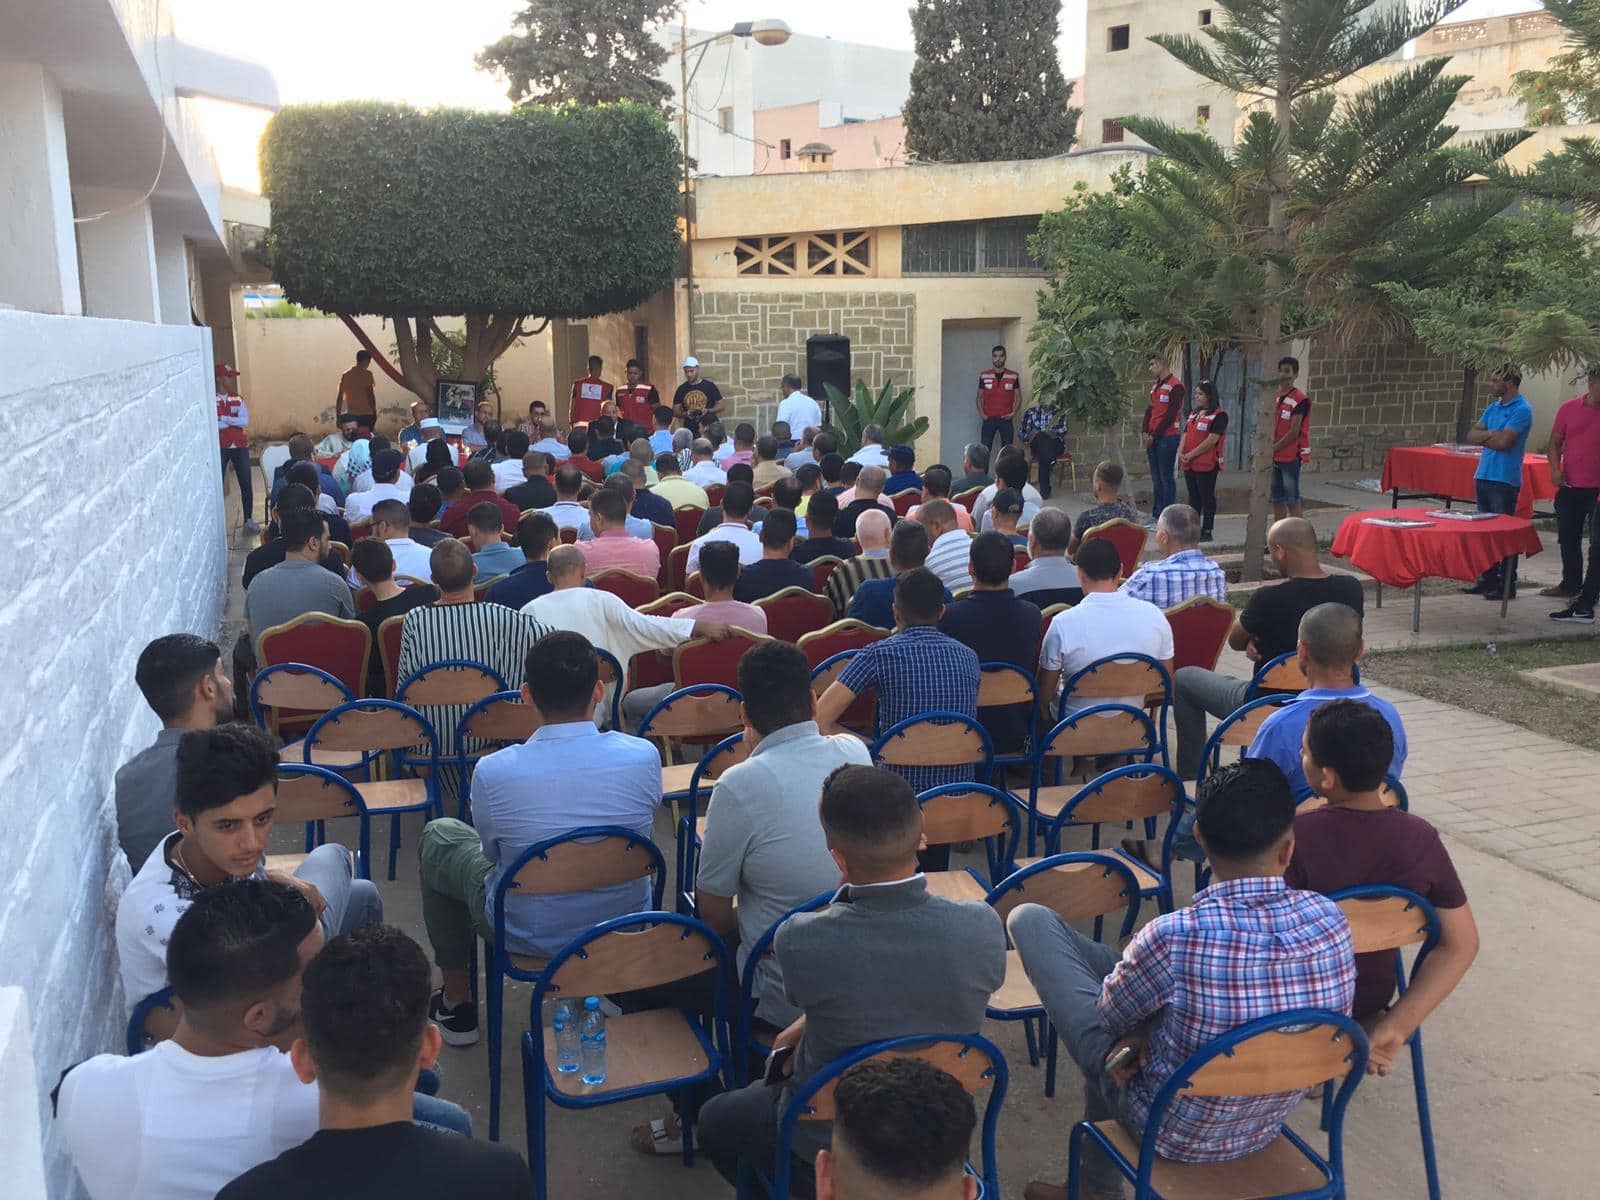 شاهد الصور: افتتاح مقر للهلال الأحمر المغربي بتراب الجماعة الحضرية بن الطيب